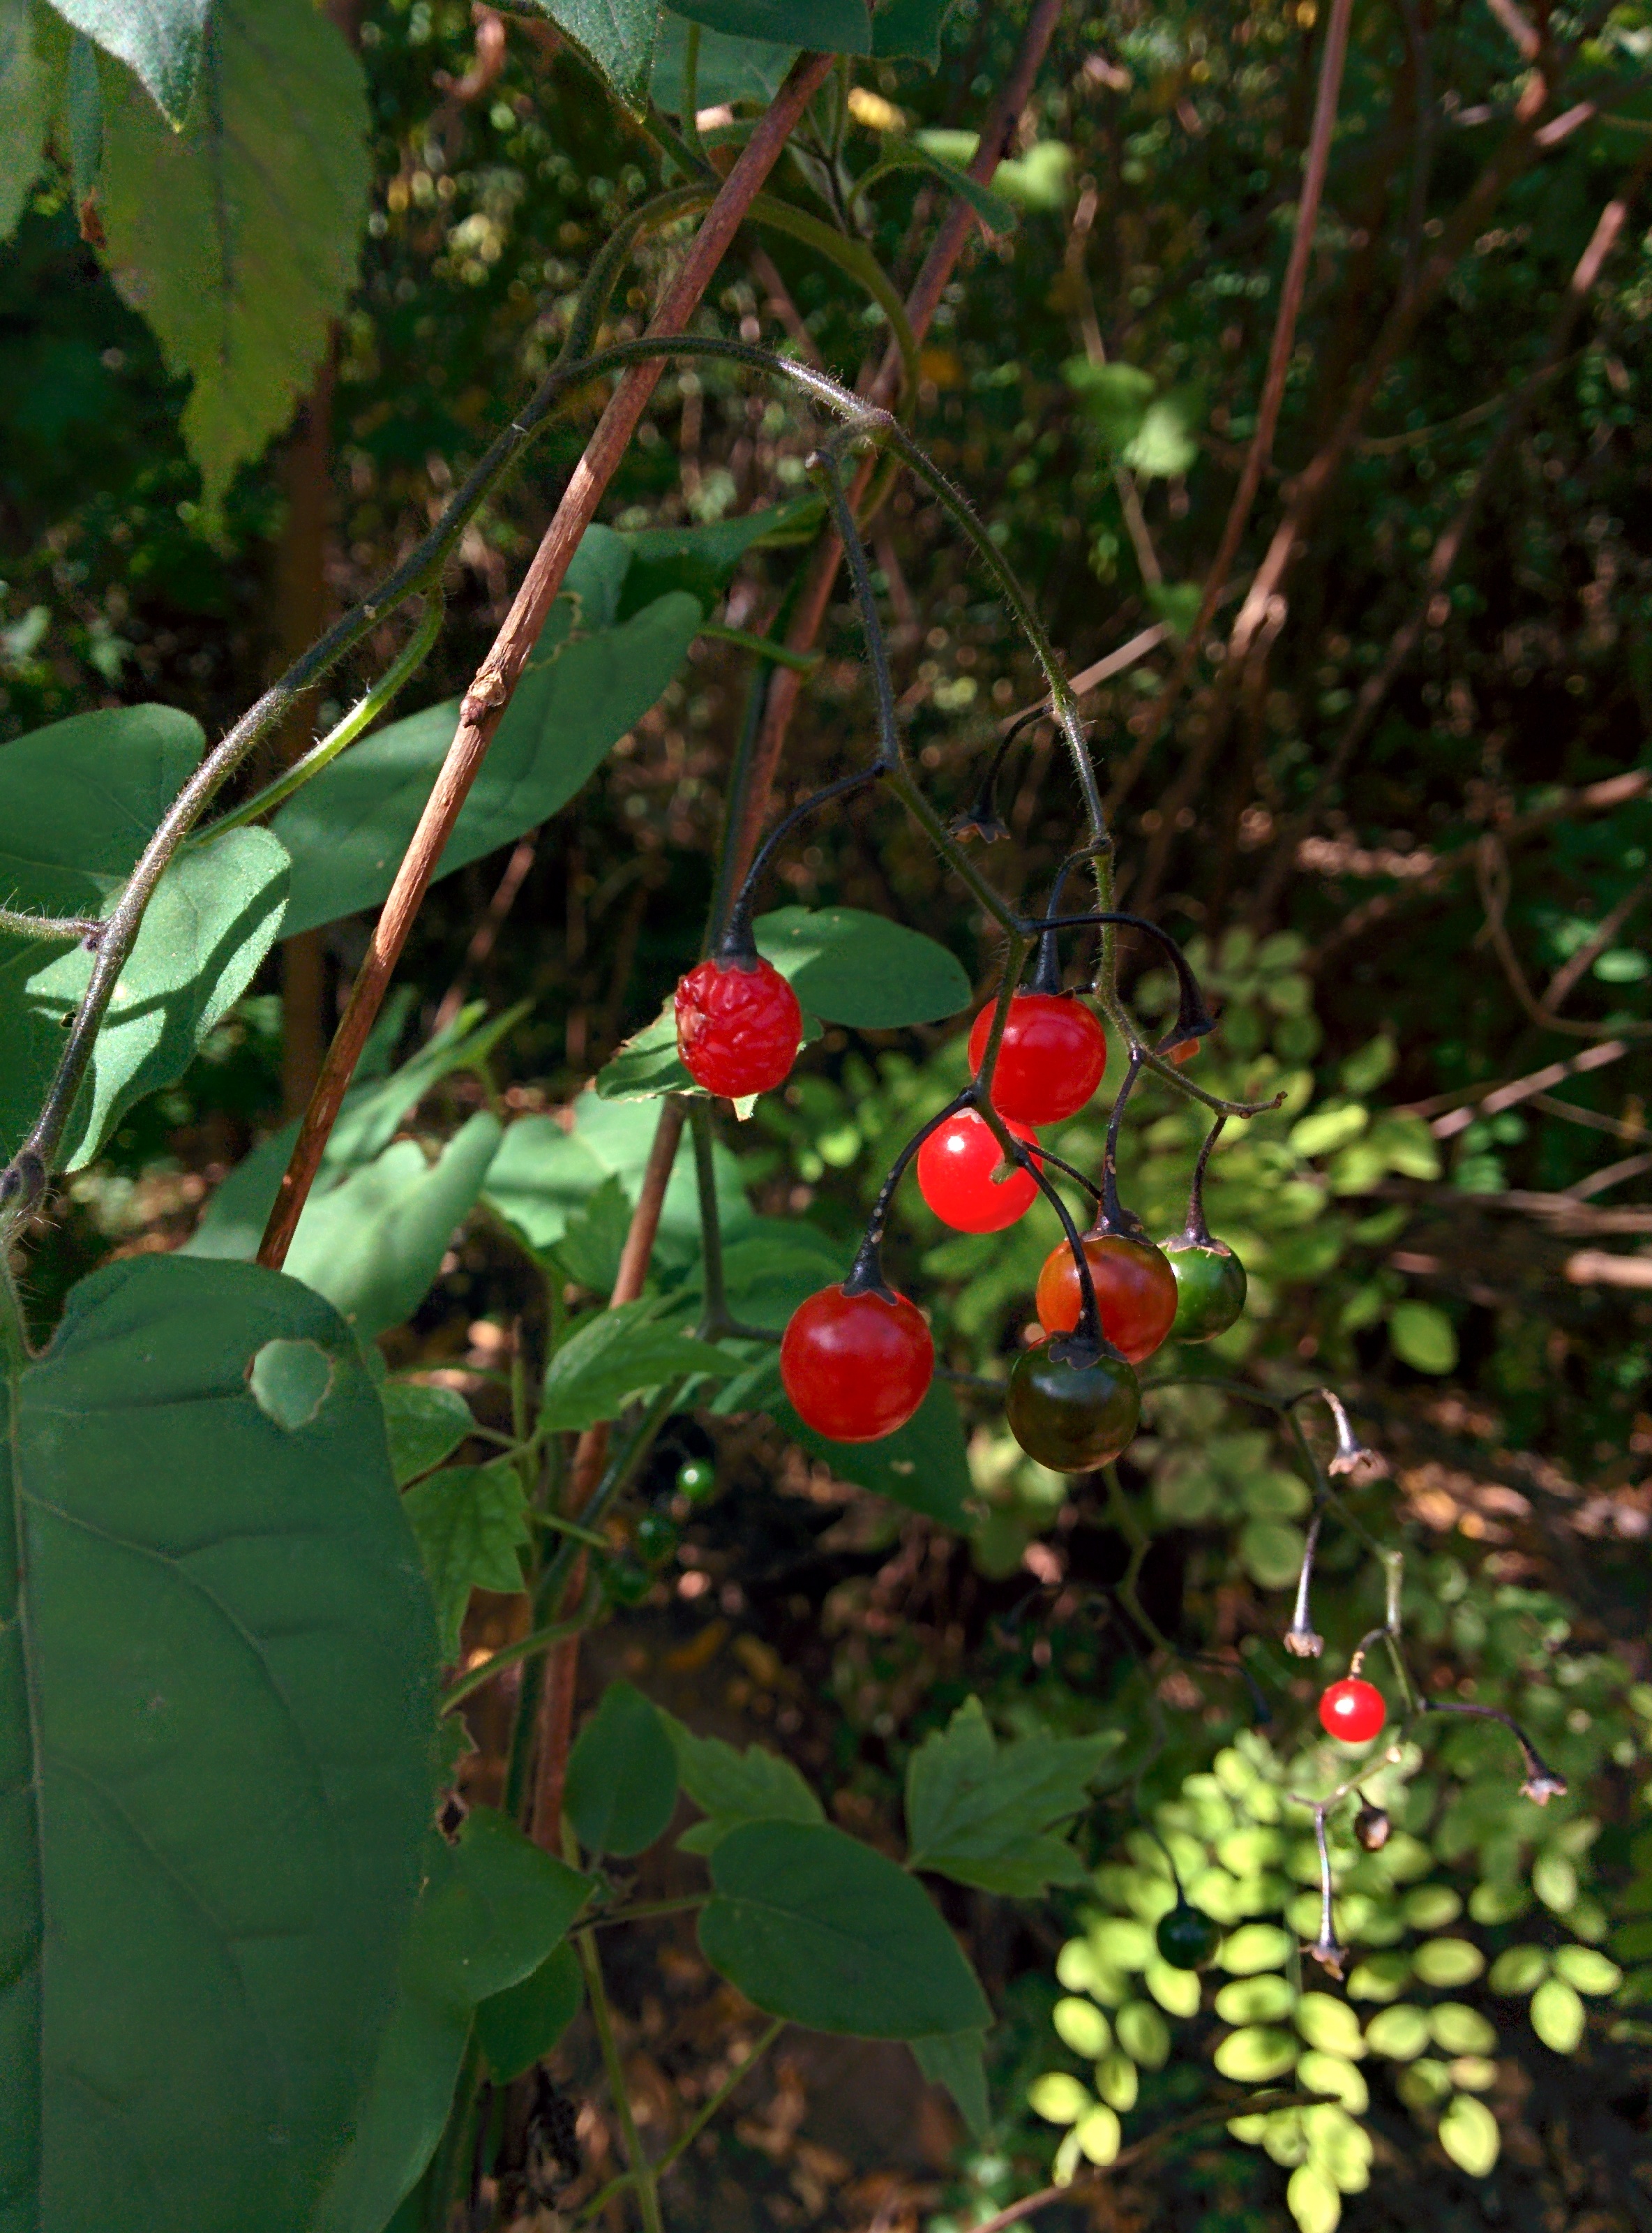 IMG_20151026_125025.jpg 방울토마토 닮은 작은 빨간색 열매가 달린 덩굴식물 -- 배풍등